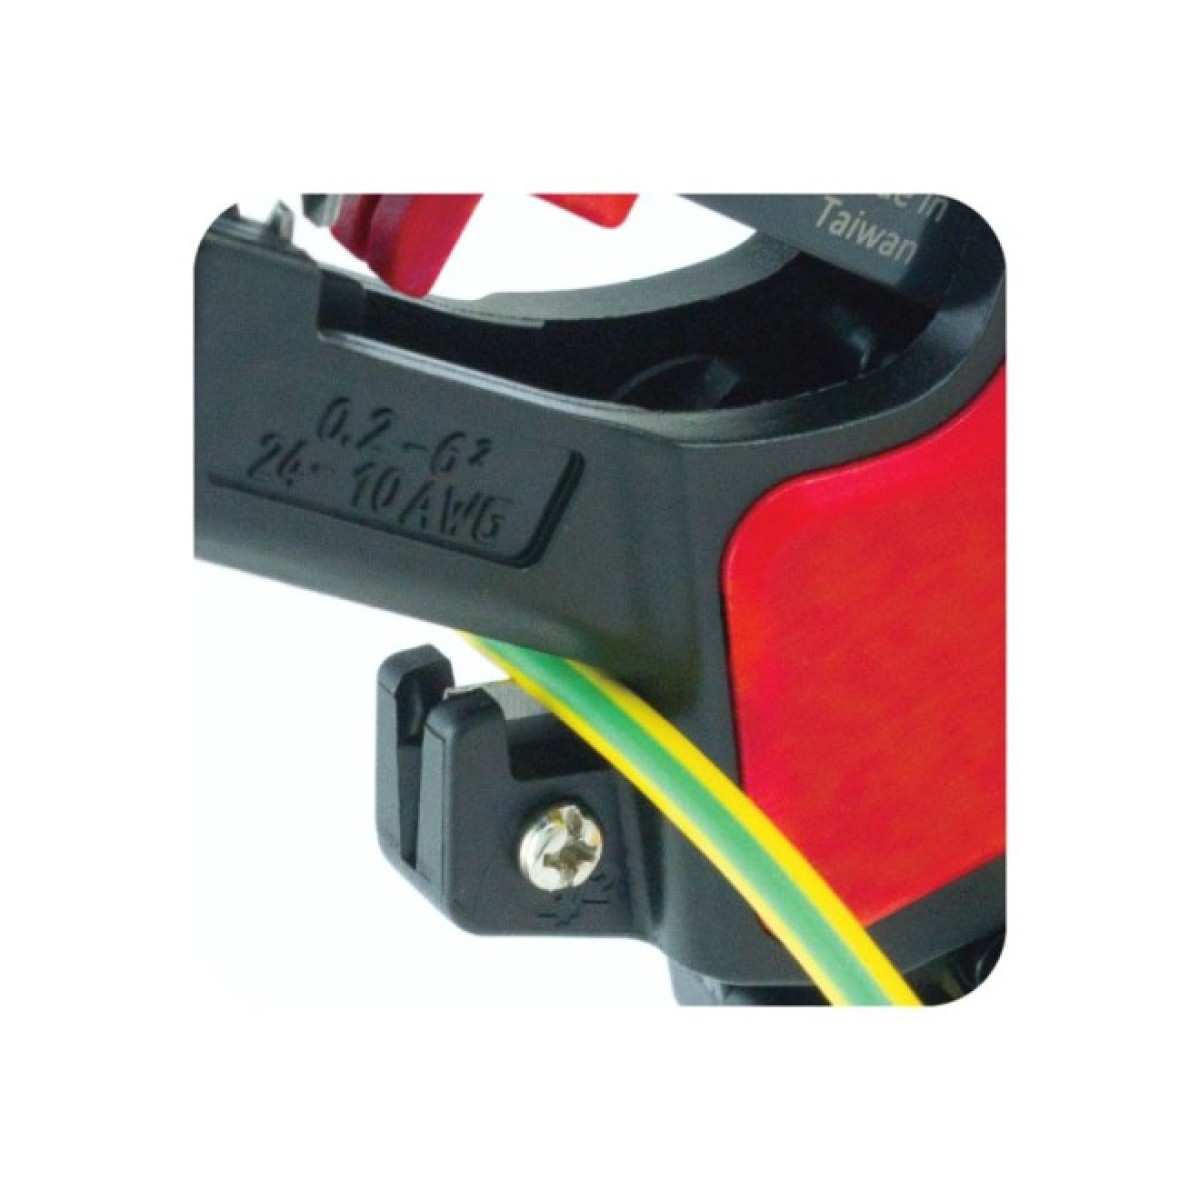 Автоматичний інструмент для зачистки 0.2-6.0 мм2 та обрізання 4.0 мм2 електричного кабелю, Hanlong 98_98.jpg - фото 4